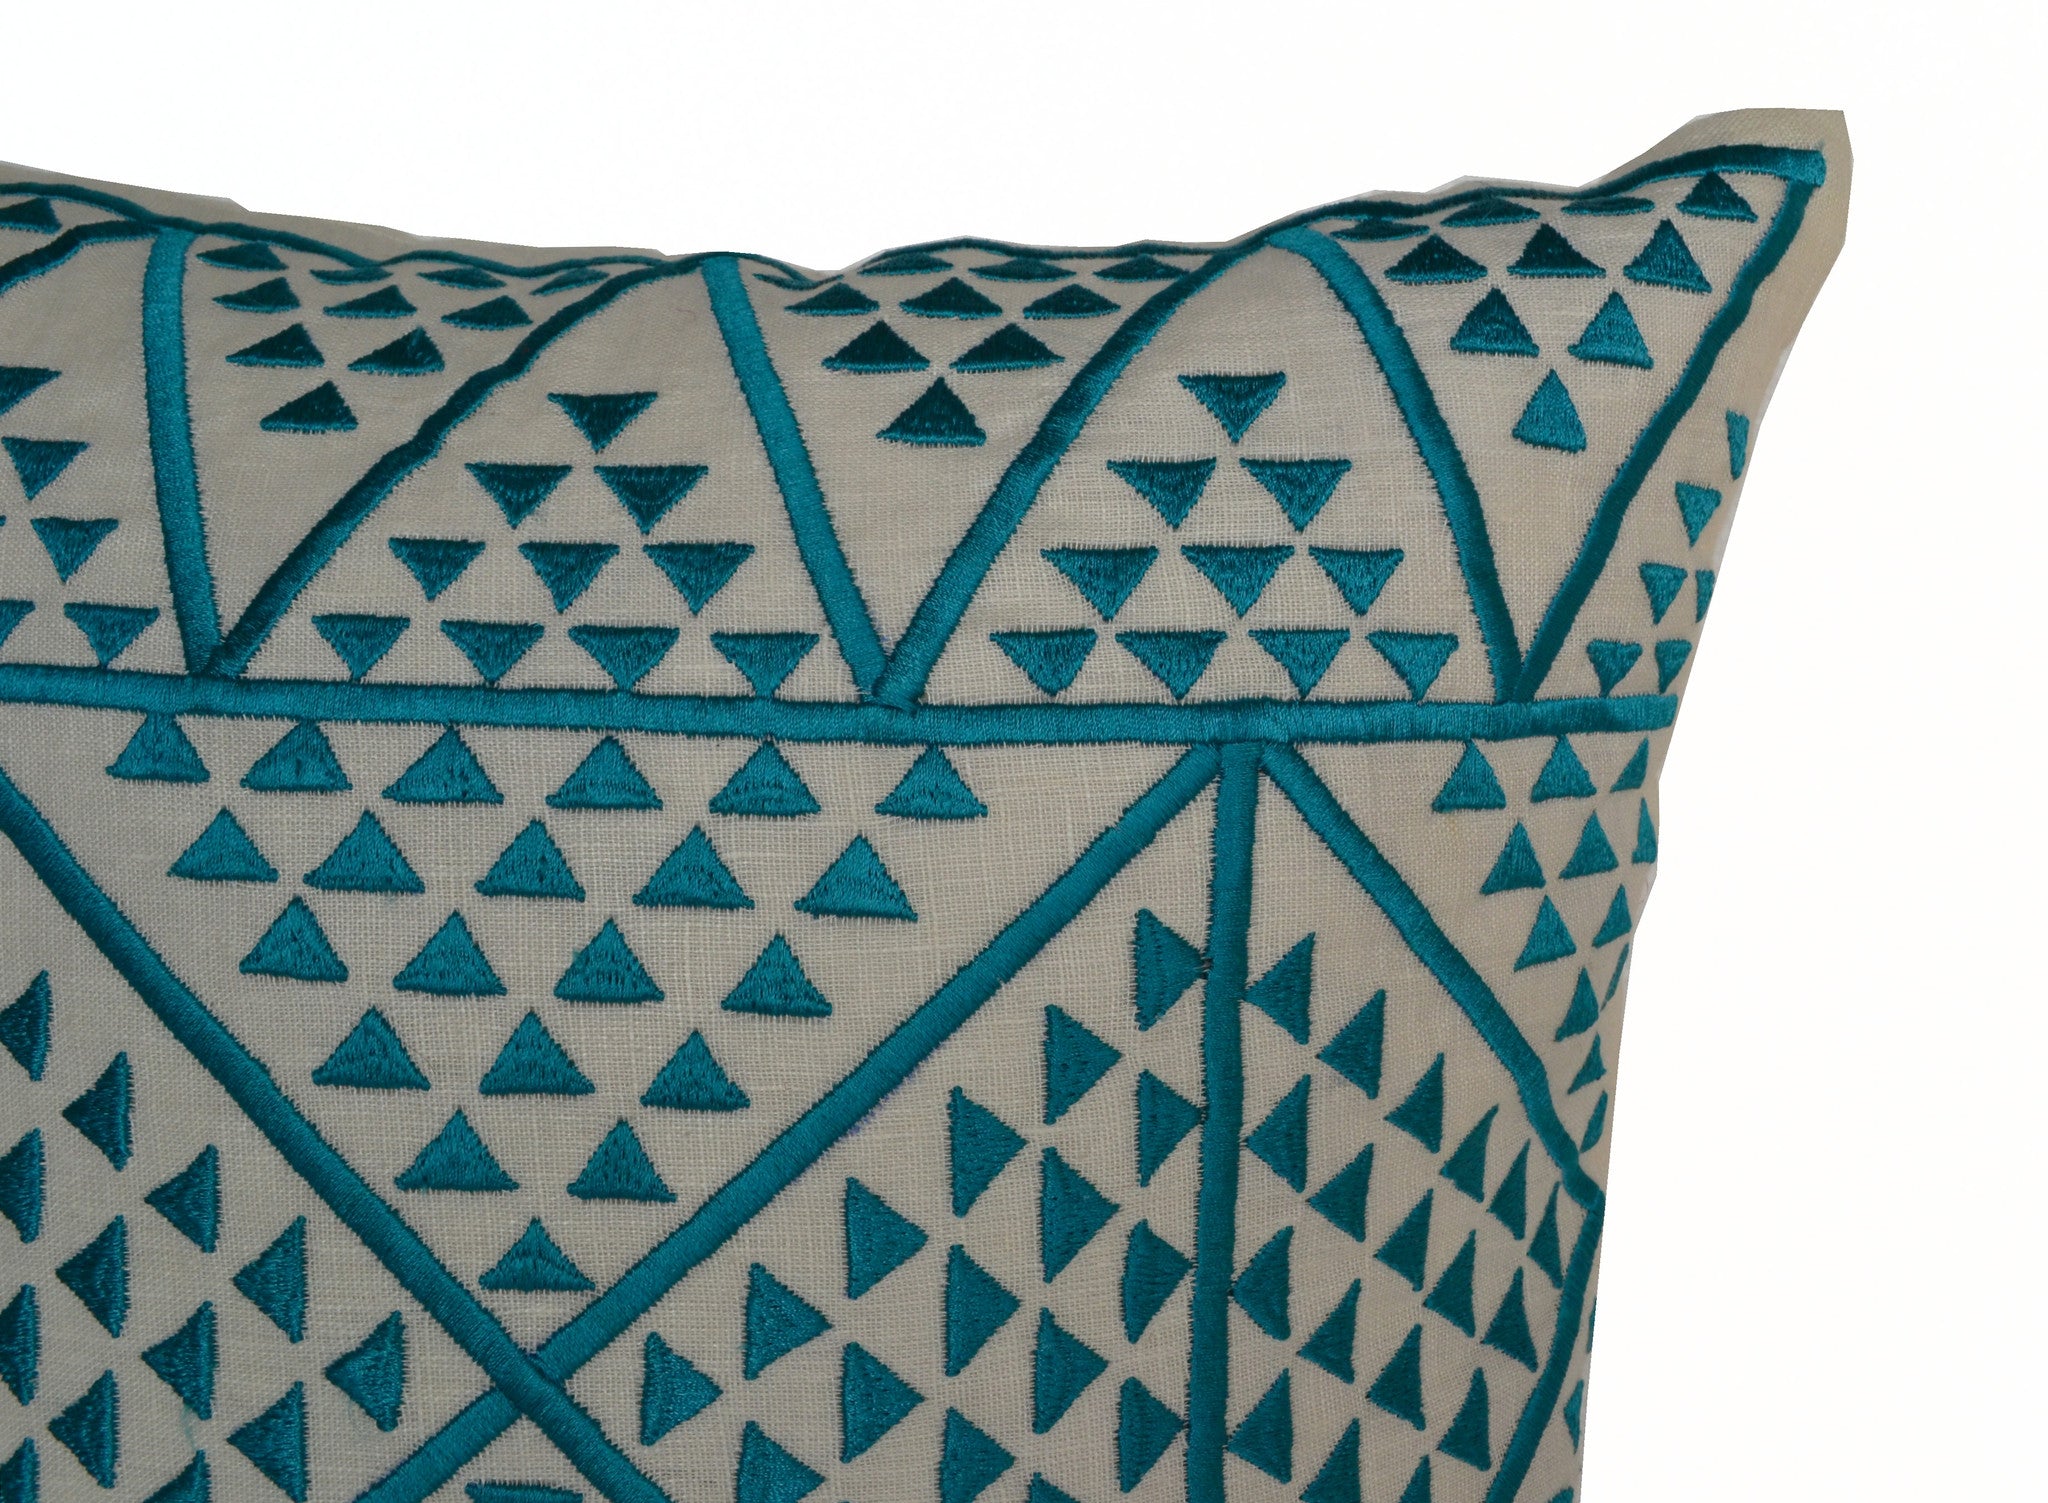  Handmade blue ivory linen pillow with Aztec design